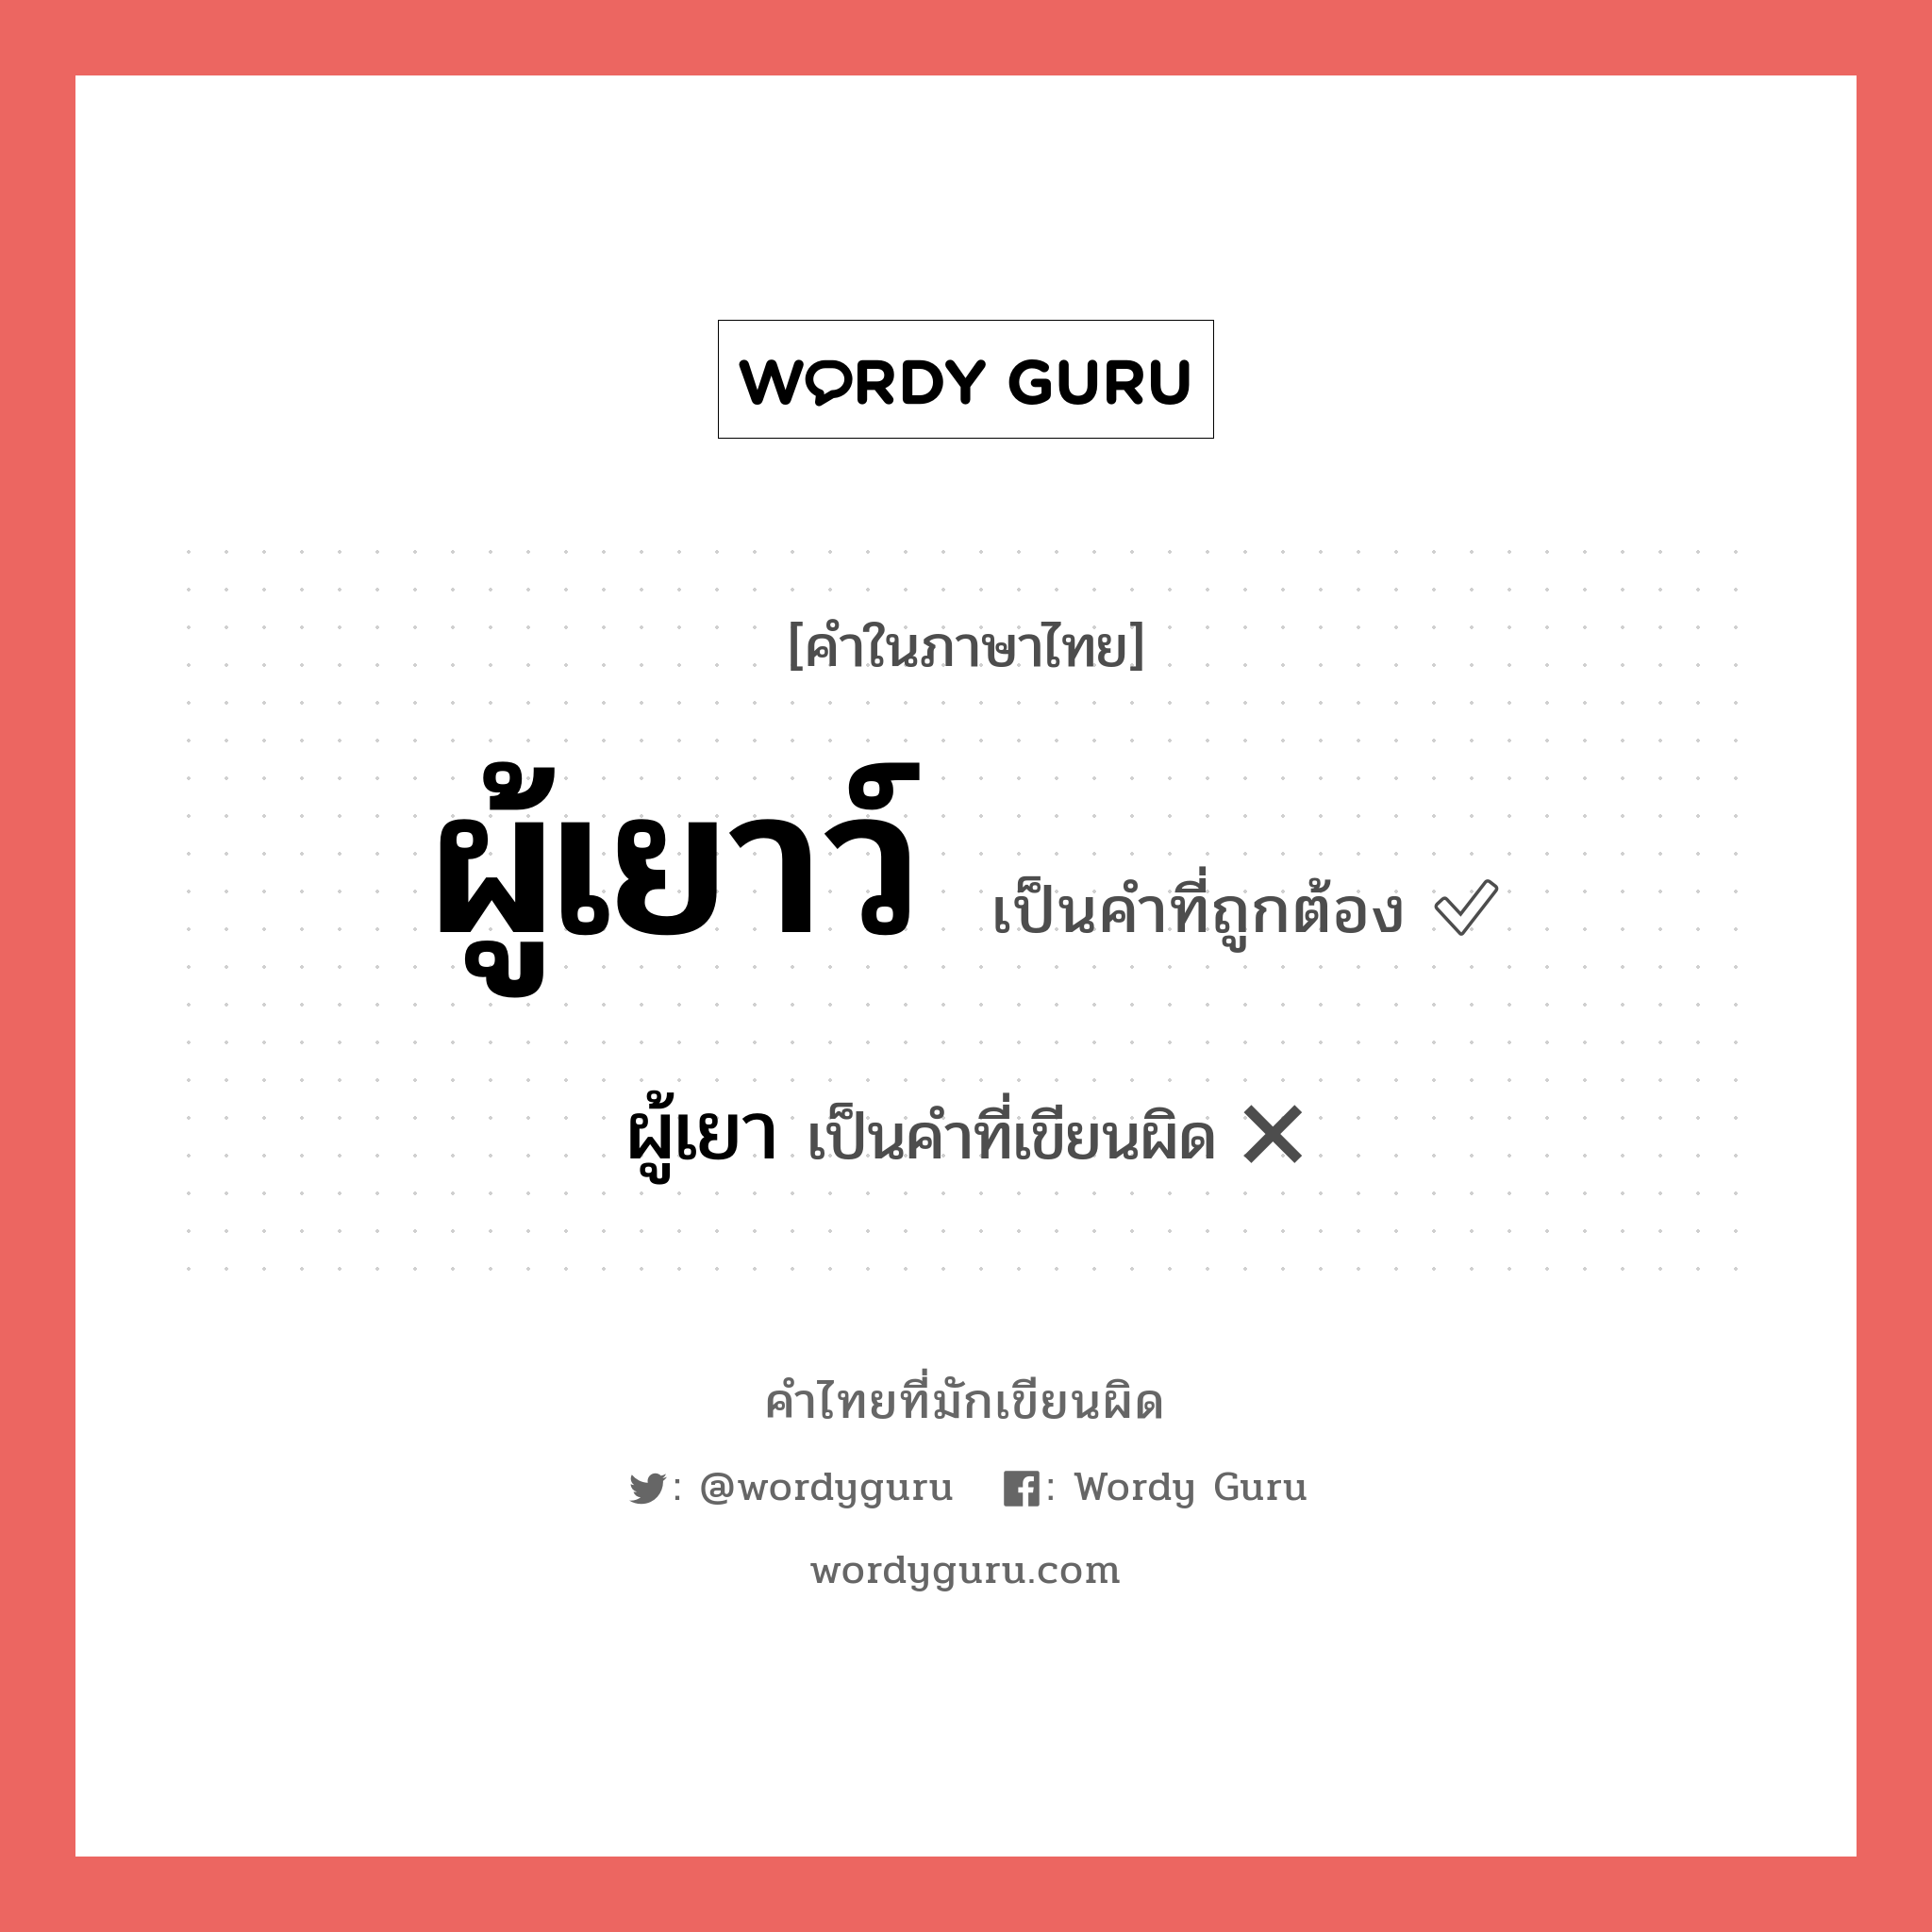 ผู้เยาว์ หรือ ผู้เยา คำไหนเขียนถูก?, คำในภาษาไทยที่มักเขียนผิด ผู้เยาว์ คำที่ผิด ❌ ผู้เยา